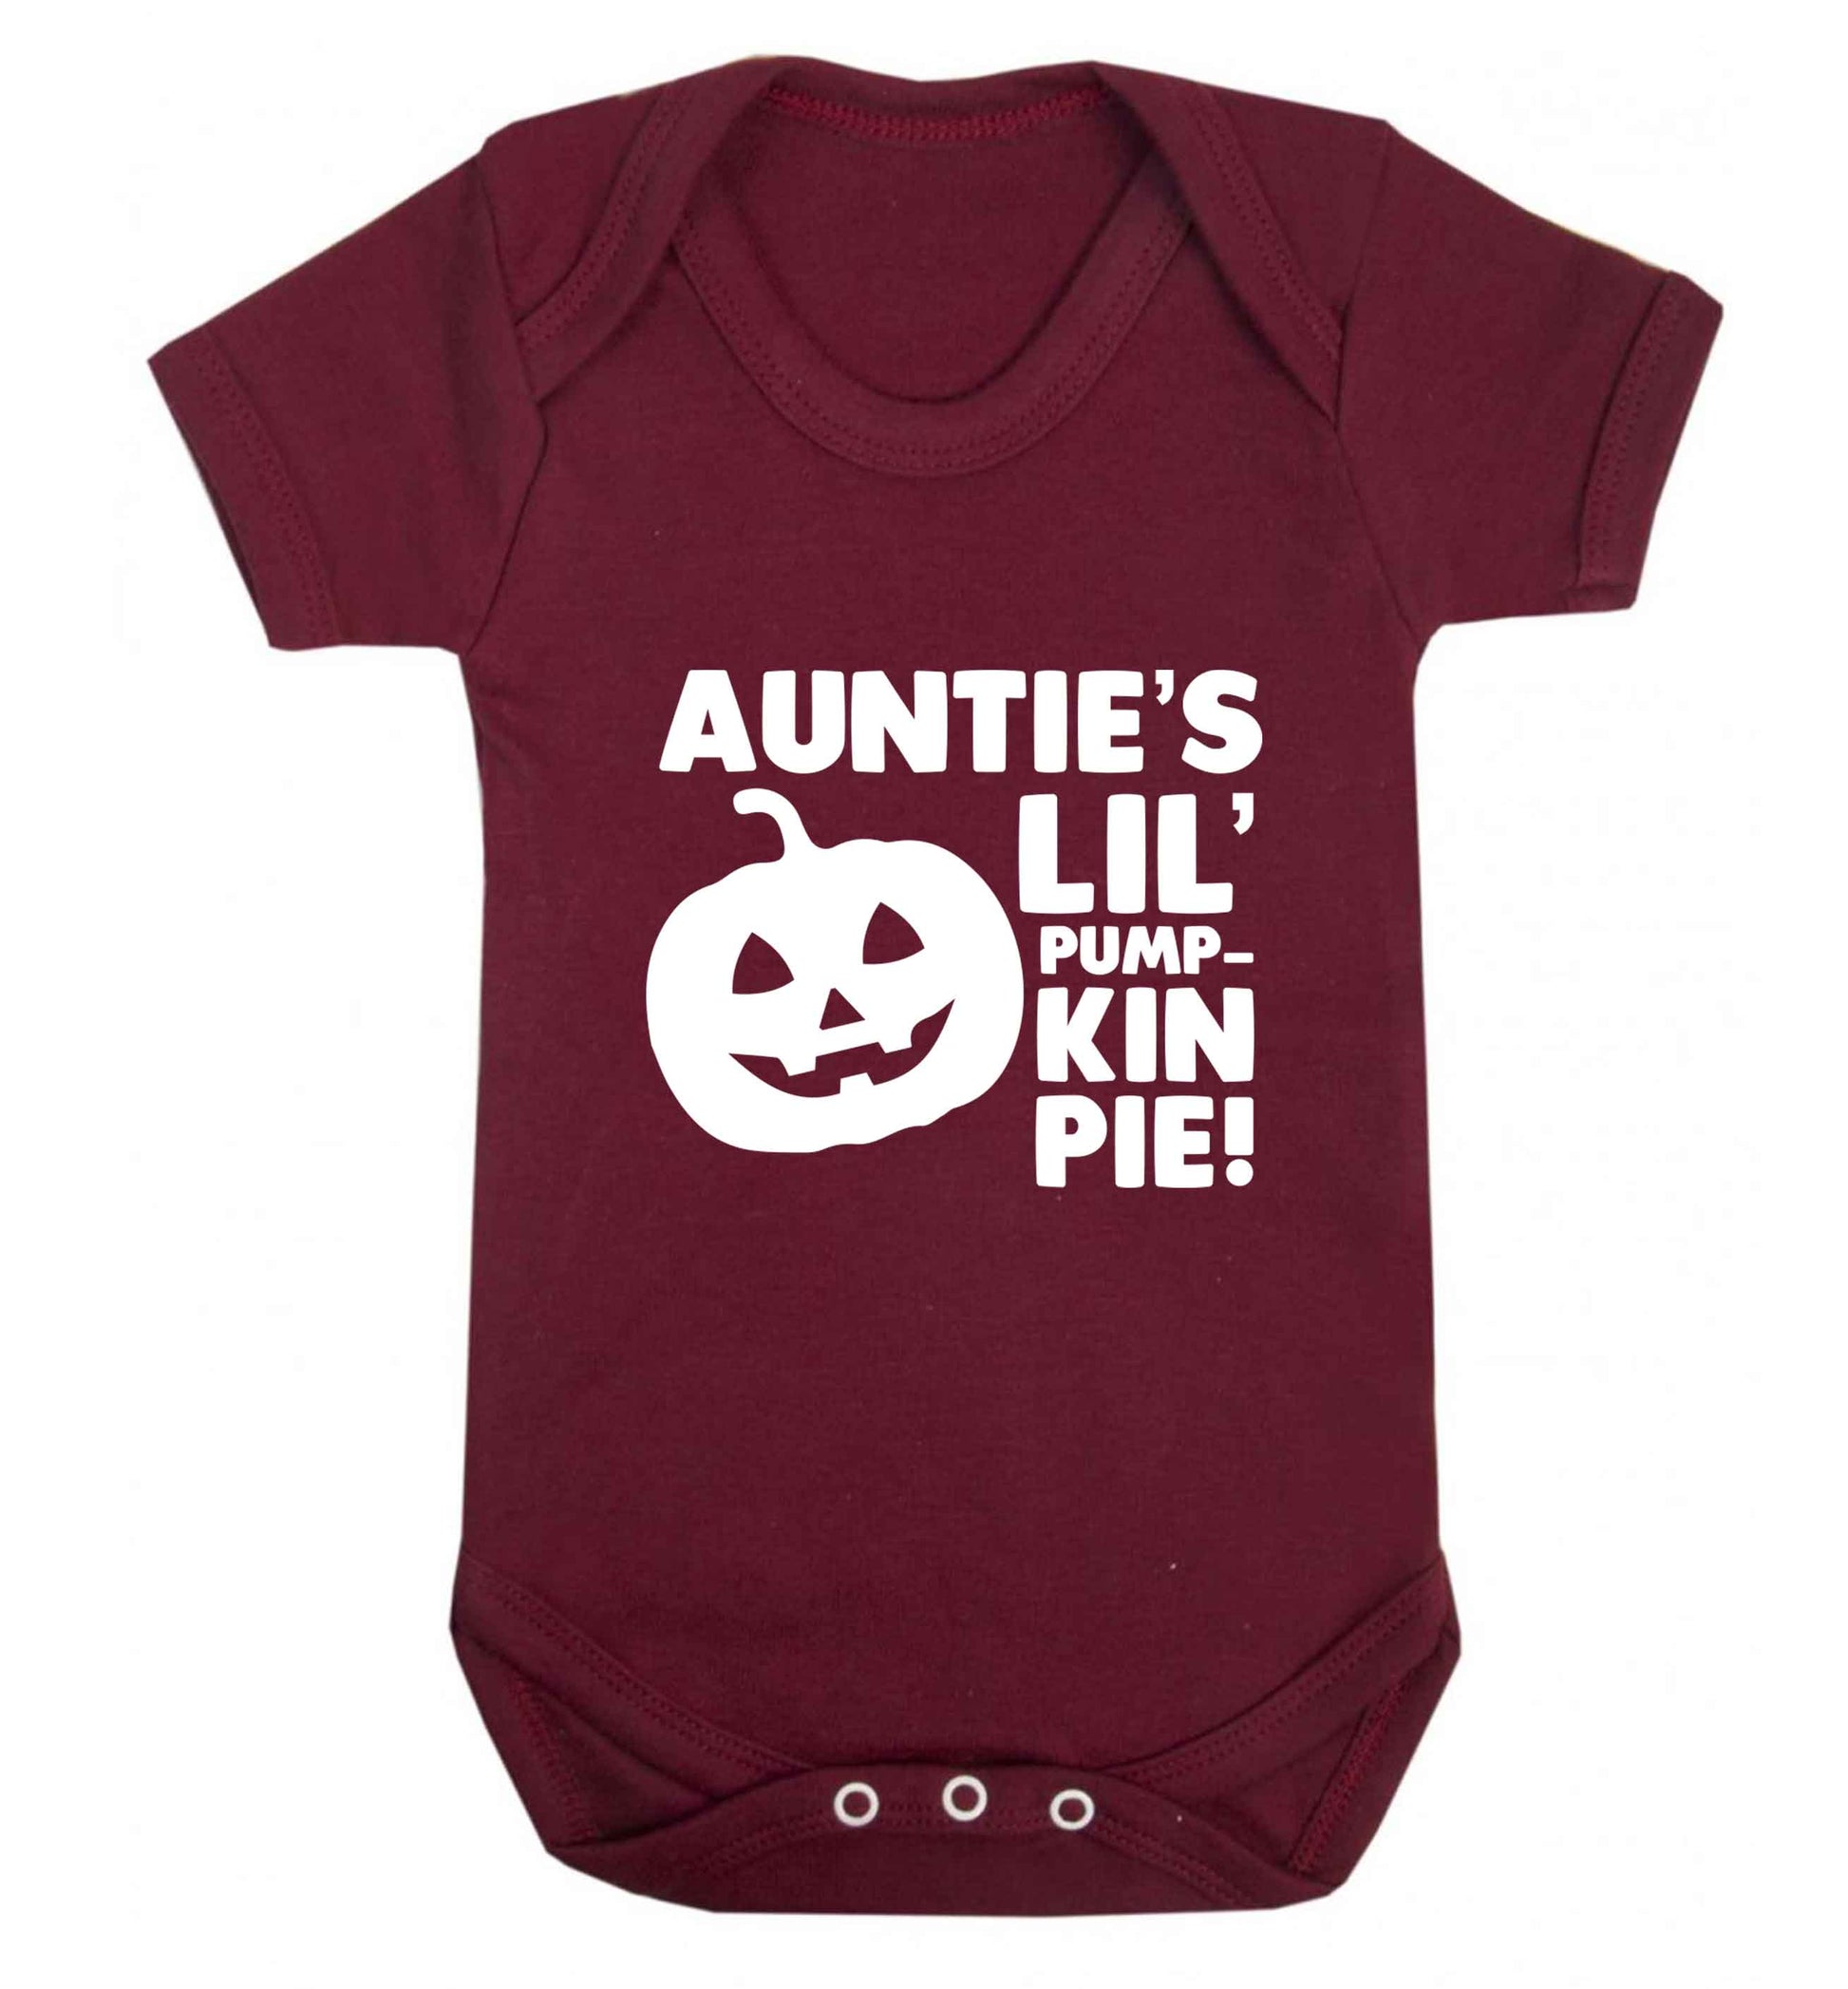 Auntie's lil' pumpkin pie baby vest maroon 18-24 months